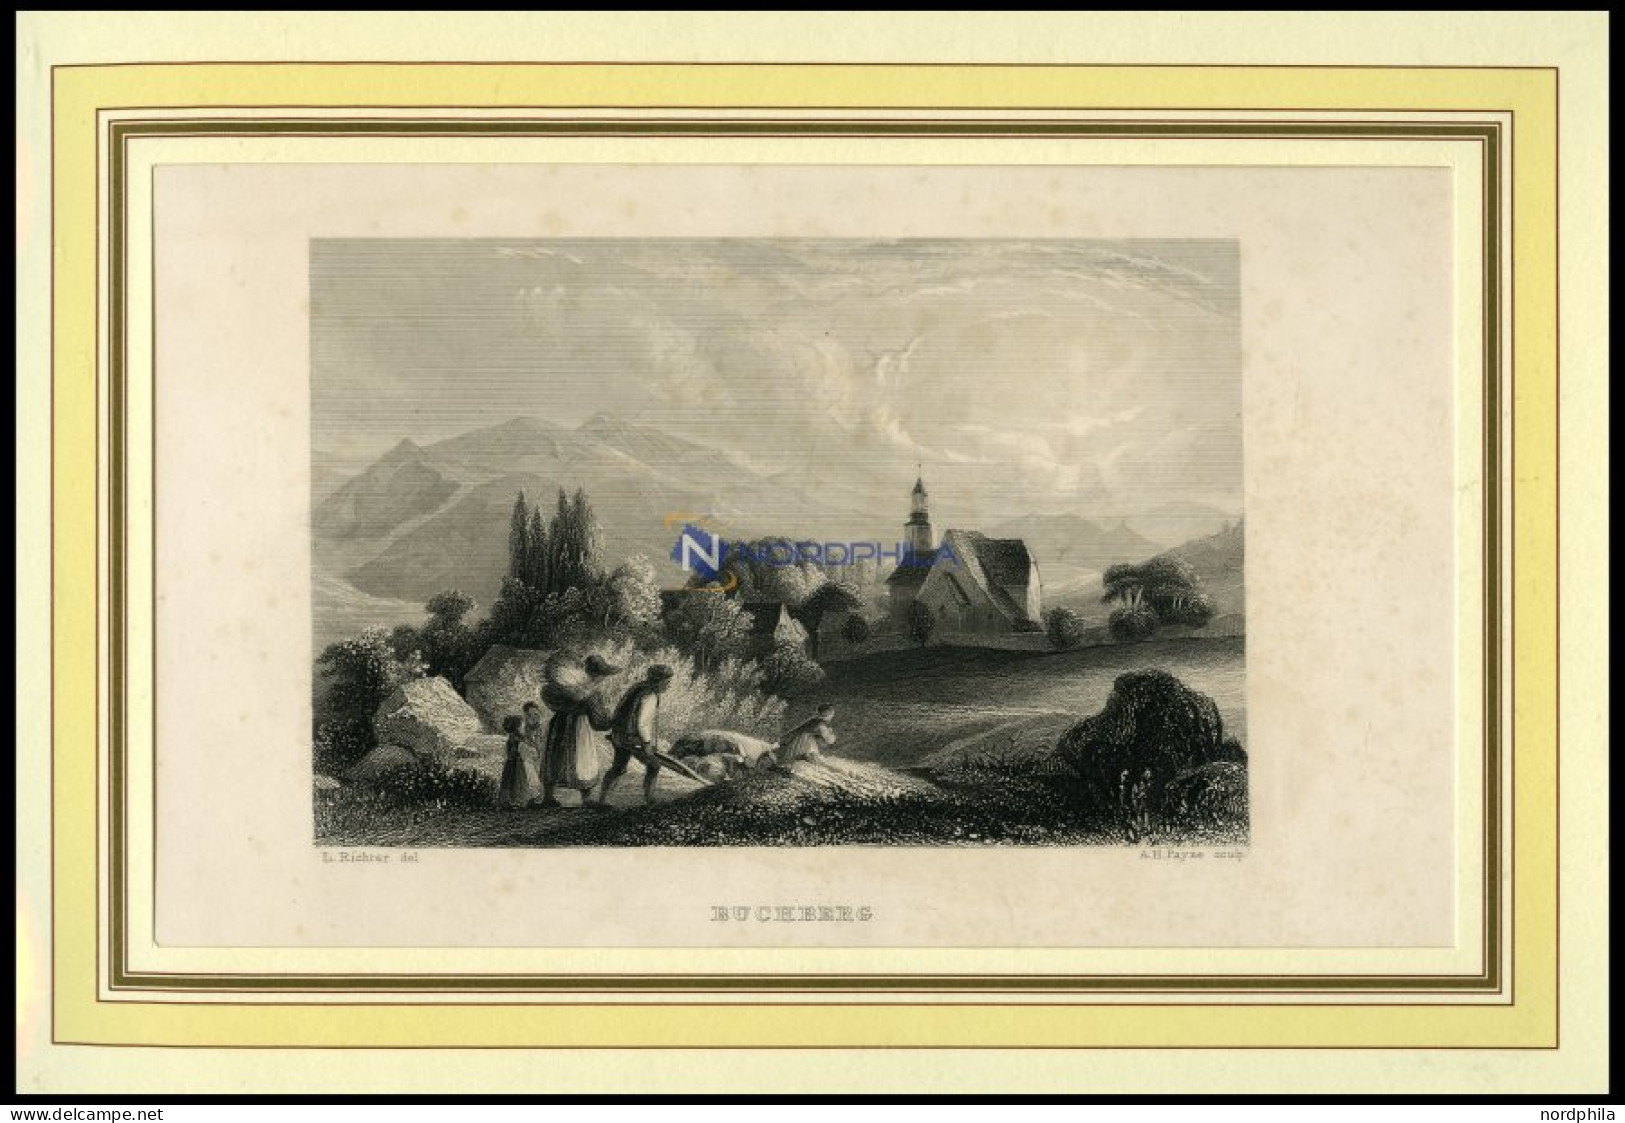 BUCHBERG, Gesamtansicht, Stahlstich Von Richter/Payne Um 1840 - Litografia